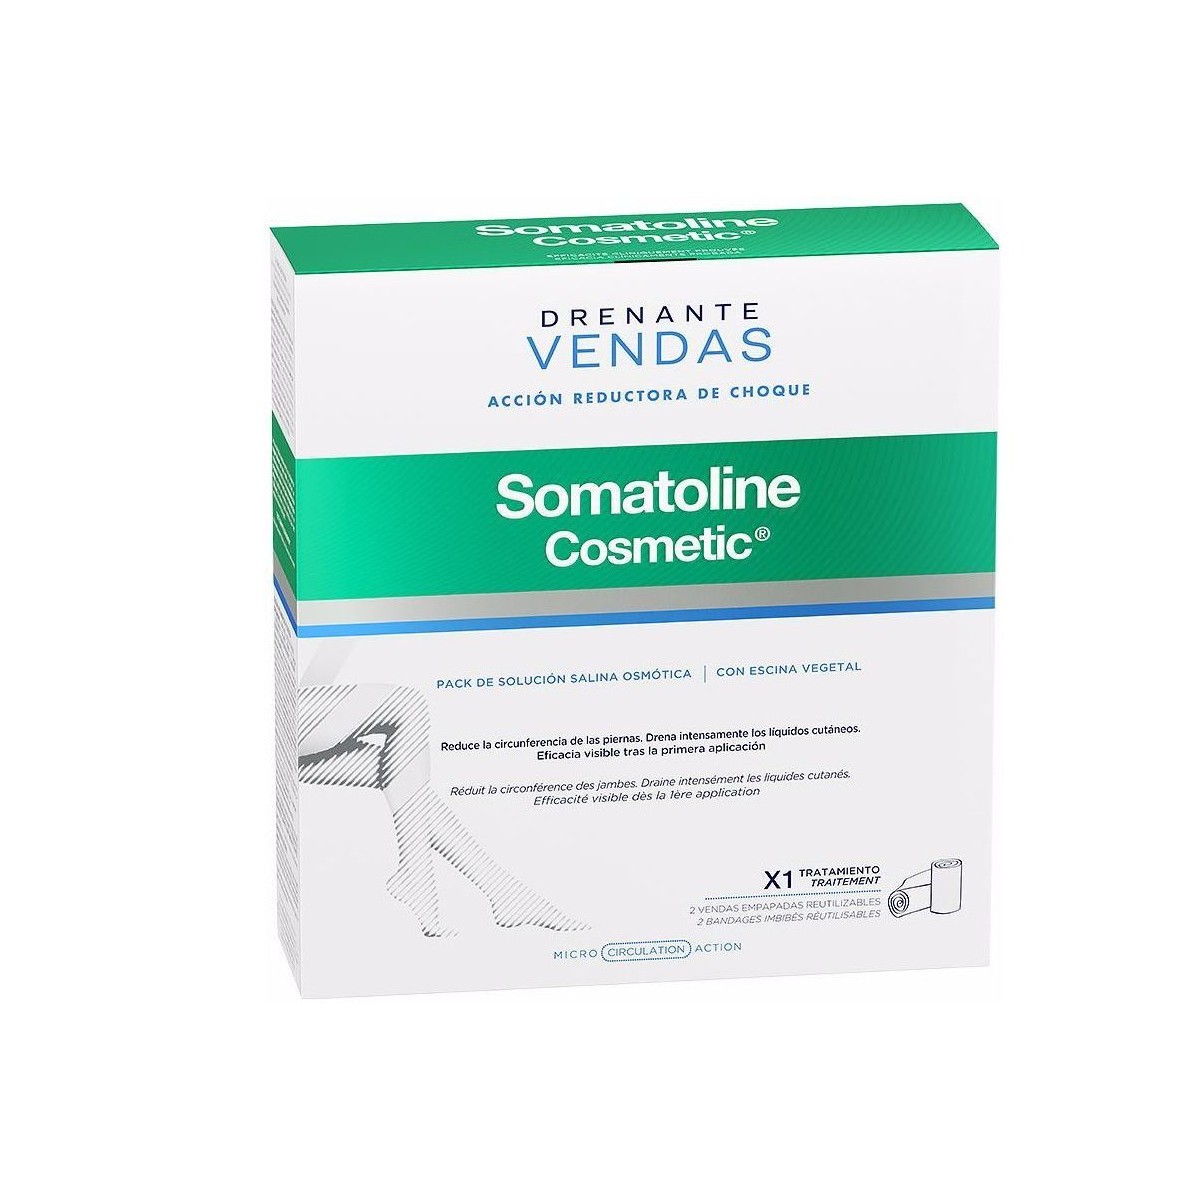 Beauté Soins minceur Somatoline Cosmetic Drenante Vendas Kit Completo Acción Reductora Choque 